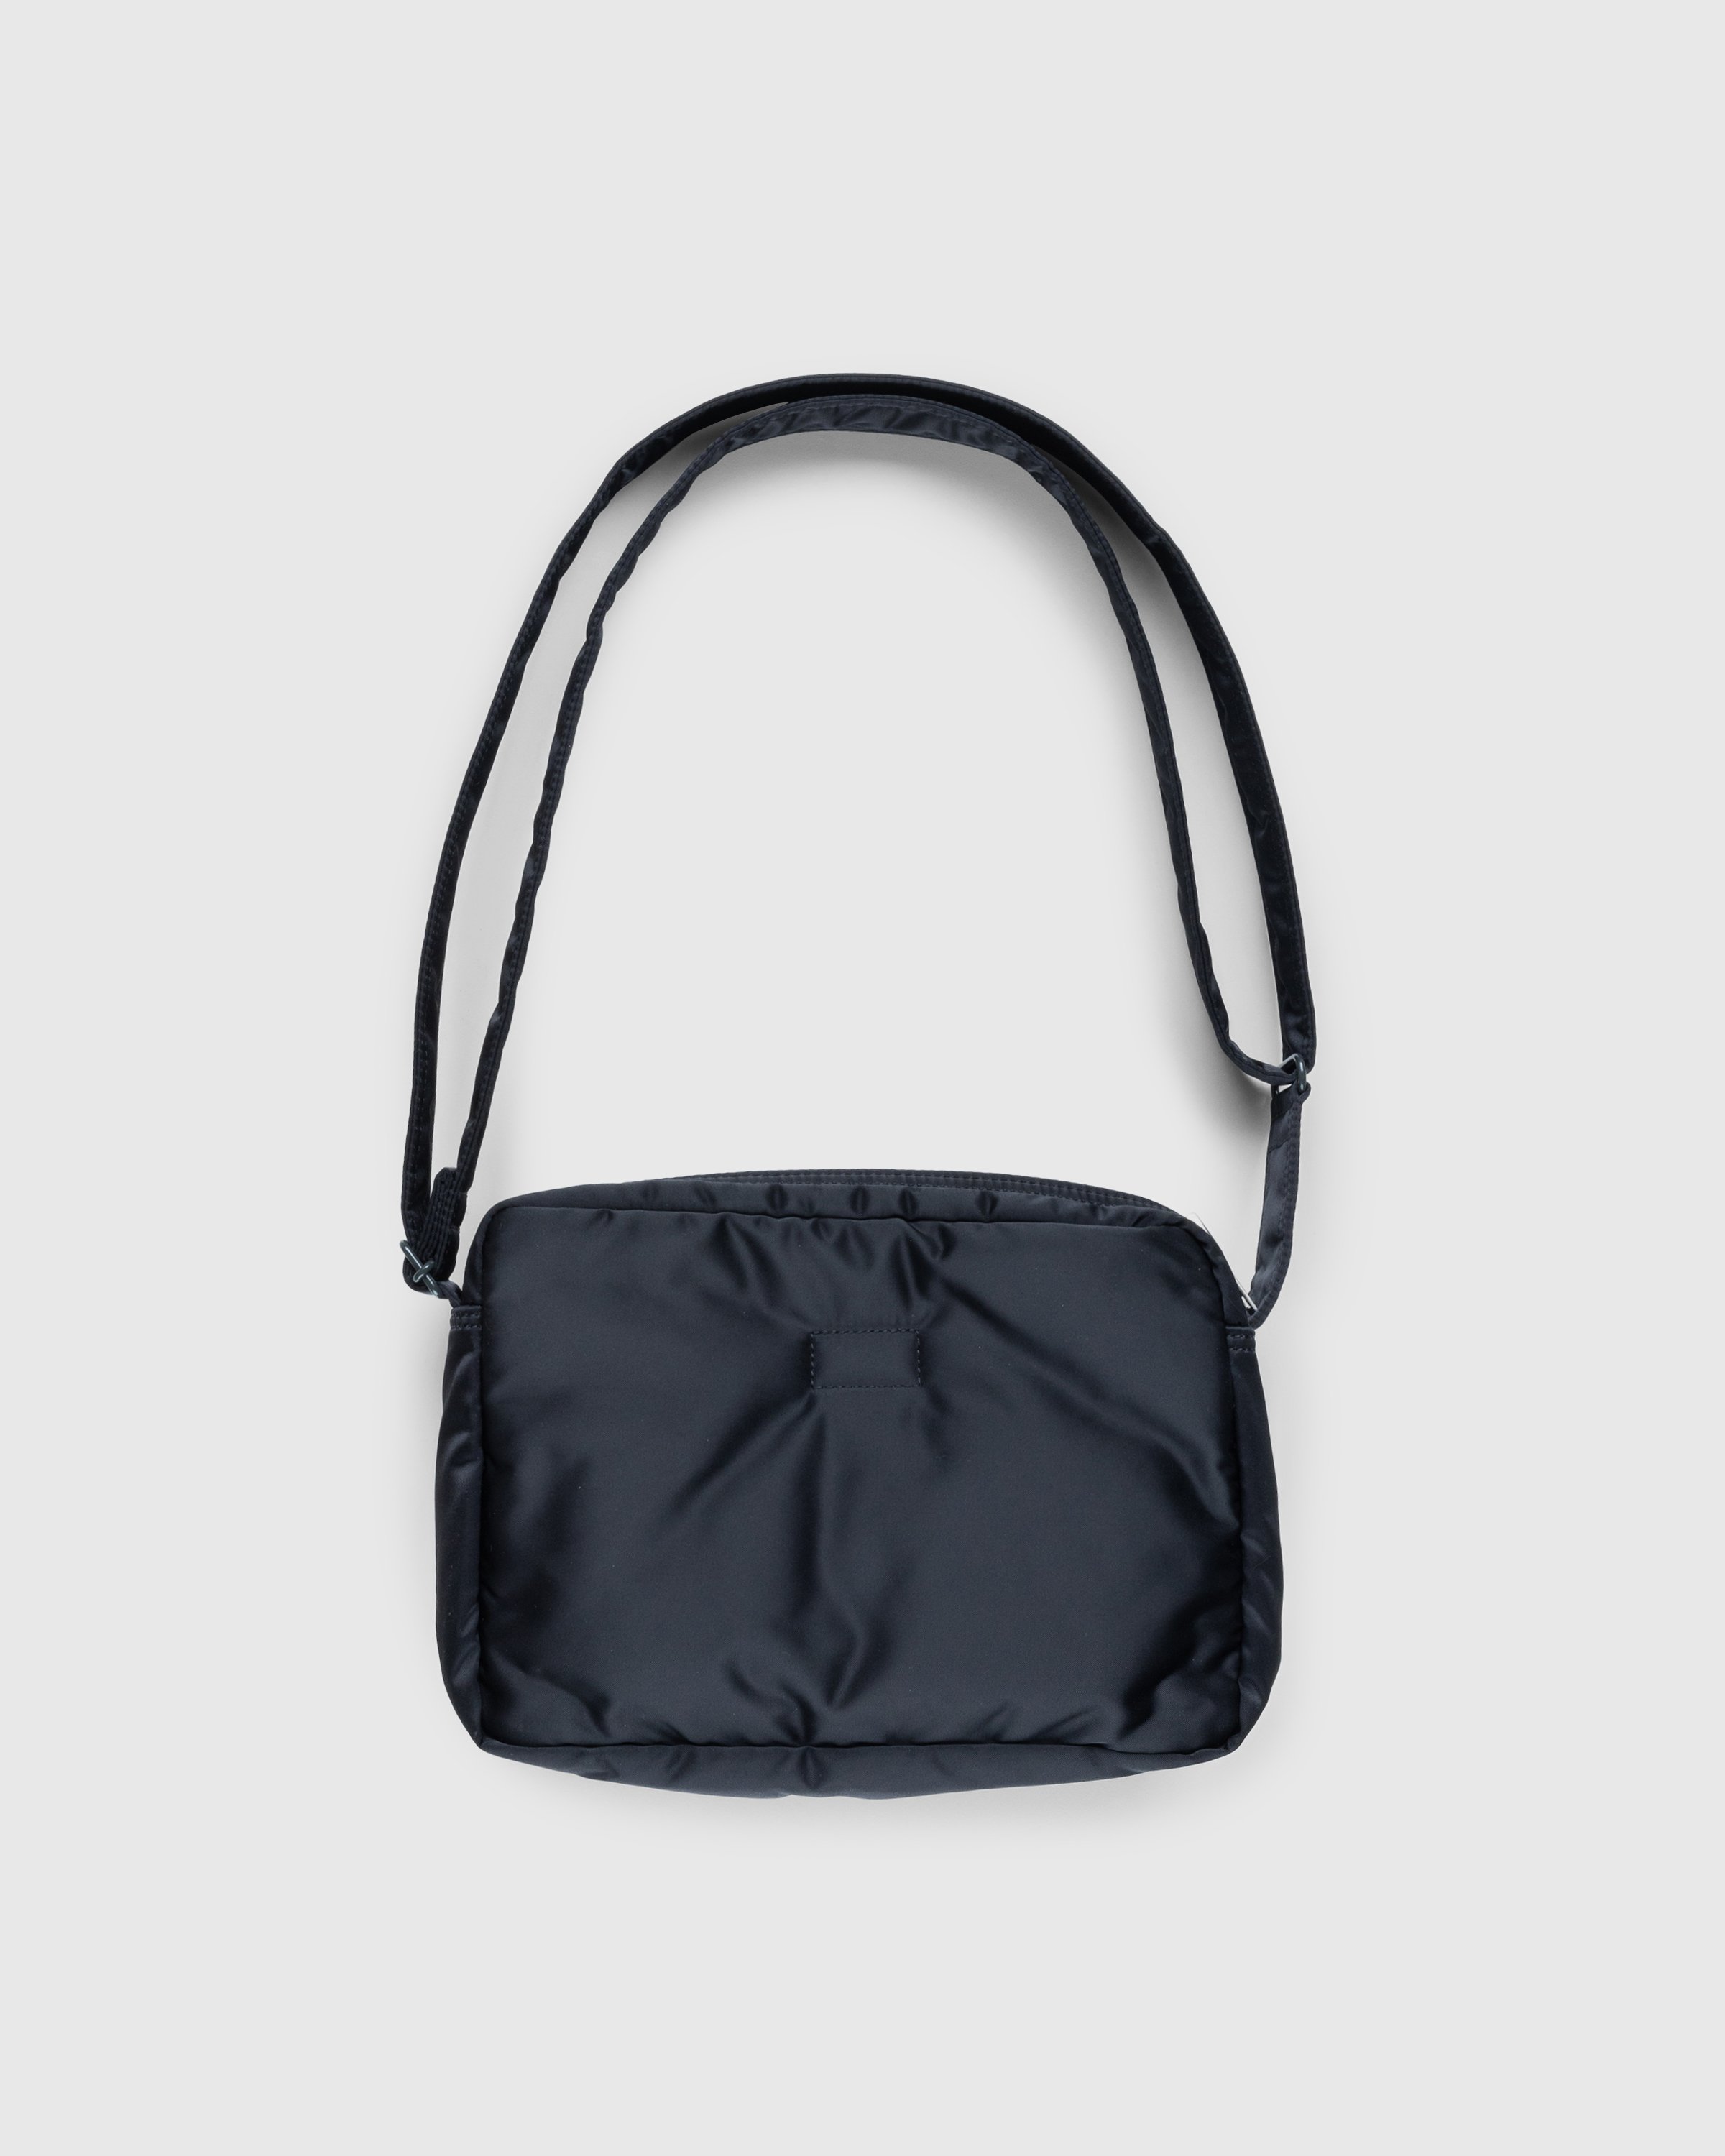 Porter-Yoshida & Co. - Tanker Shoulder Bag Black - Accessories - Black - Image 2